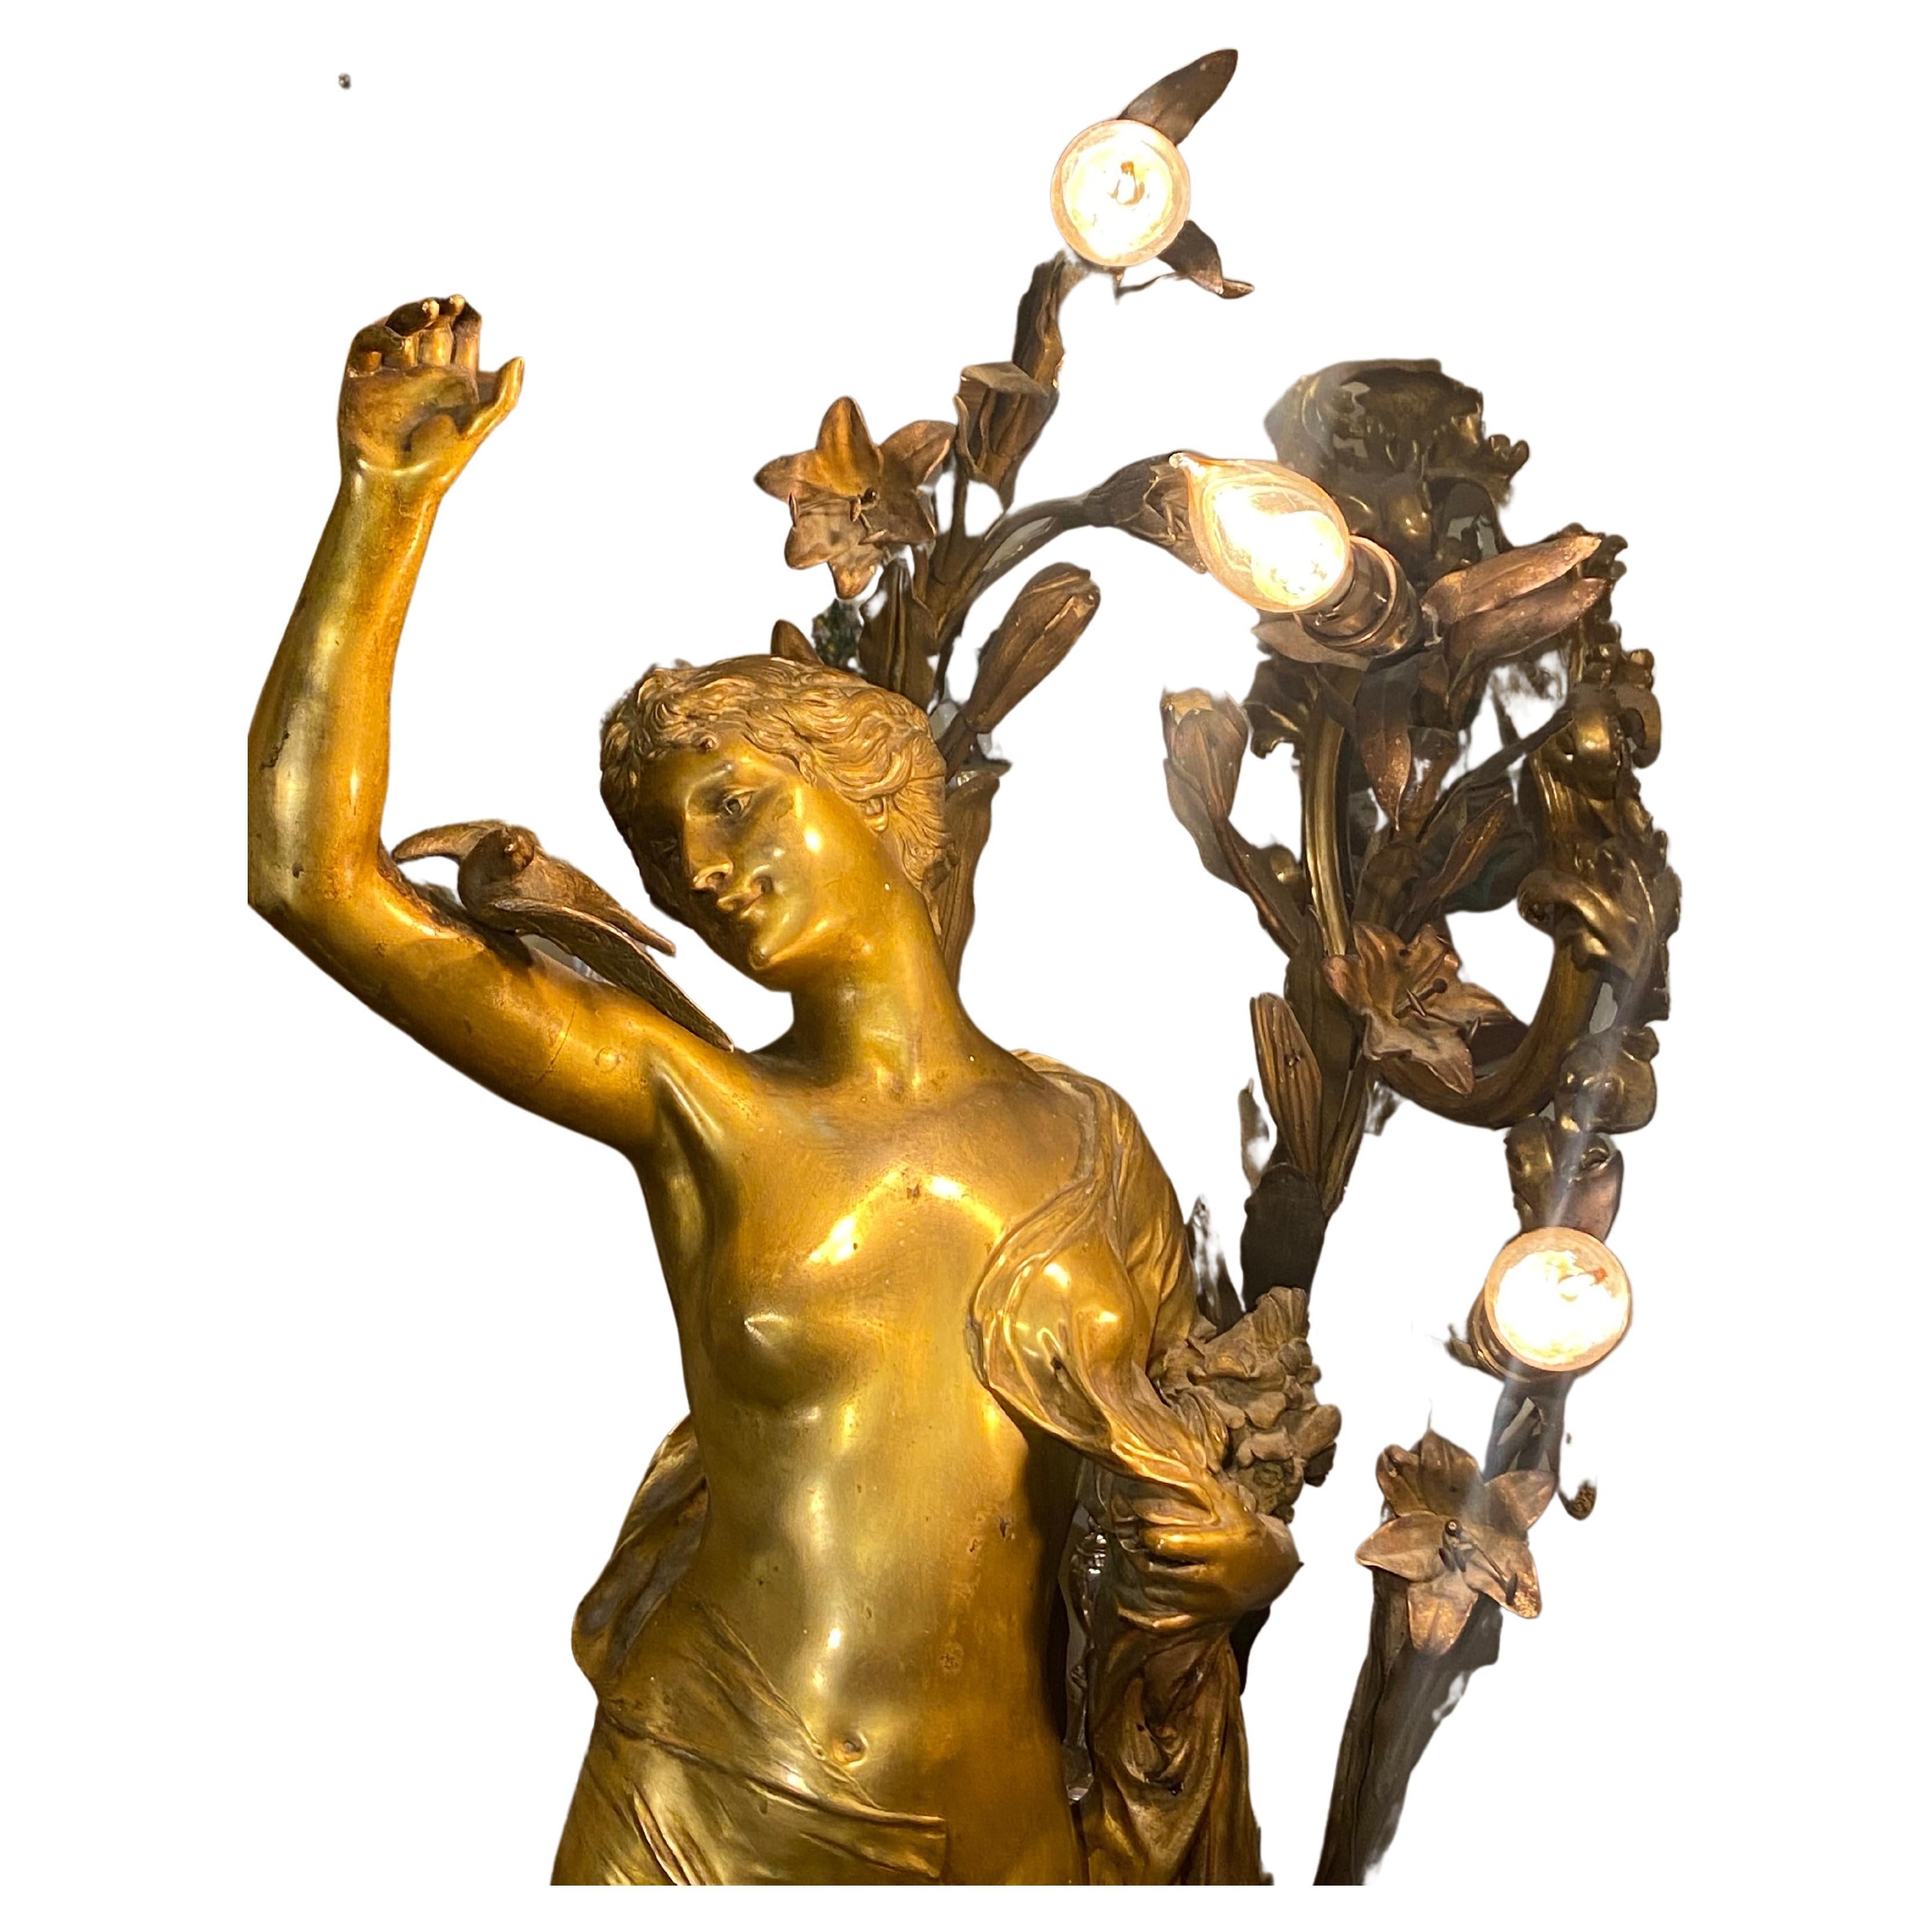 Une superbe et très grande lampe Art Nouveau Dore en bronze doré représentant une dame avec une décoration de flore et de feuillage et avec trois branchements de lumière.
Circa 1900. Signé Henri Ple et cachet Millet à Paris.
Une belle pièce en bon